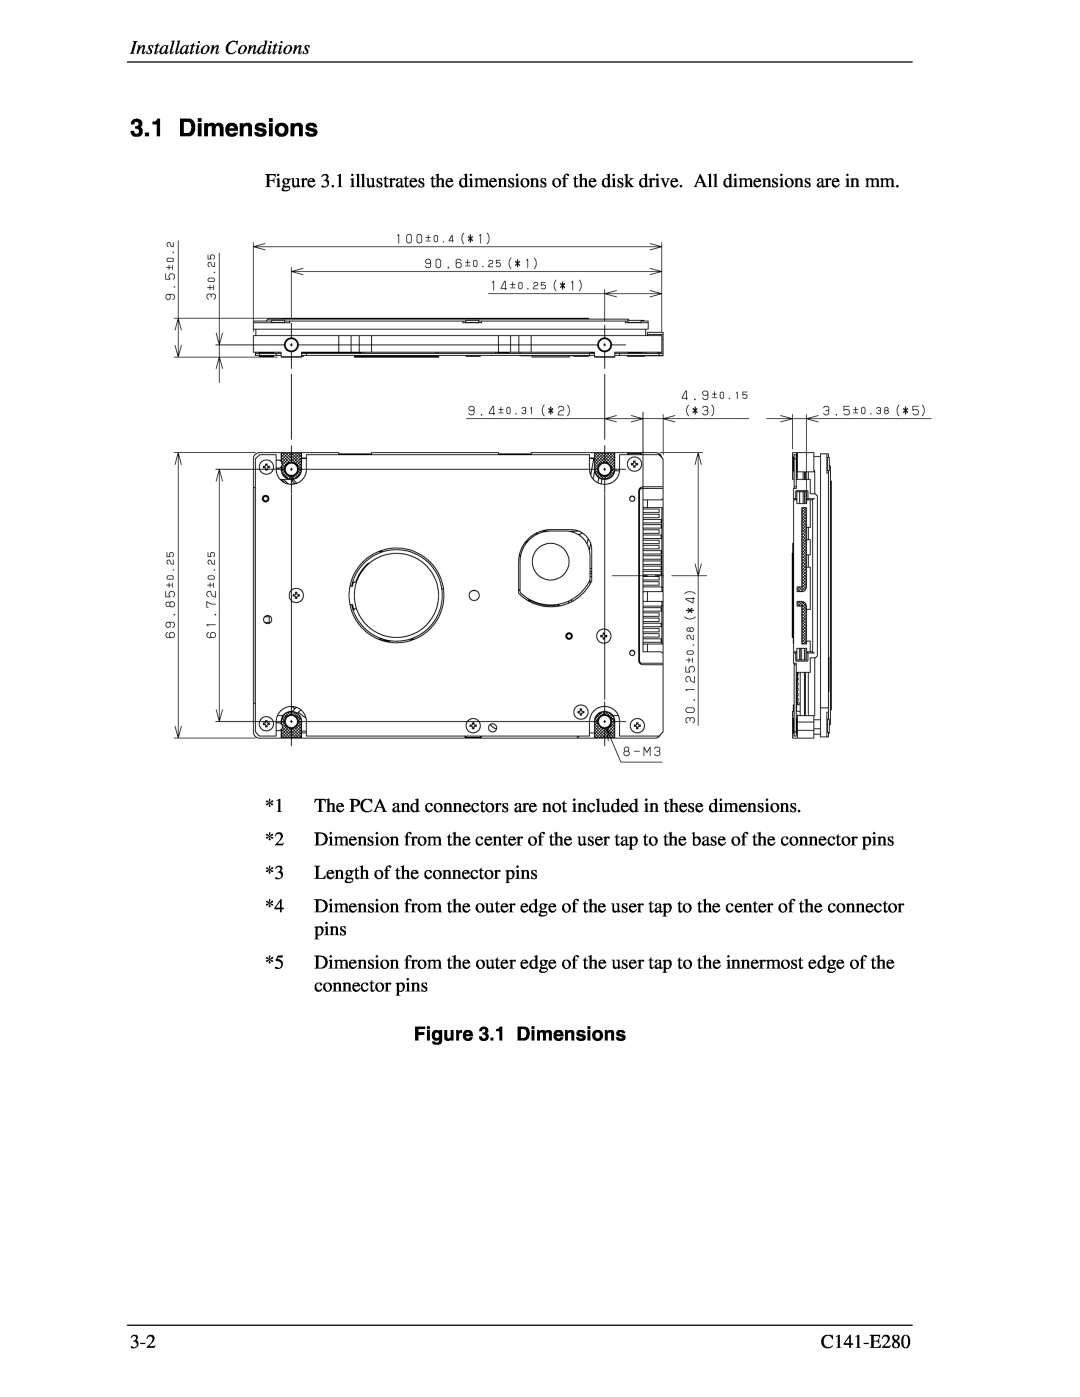 Fujitsu C141-E280 dimensions Installation Conditions, 1 Dimensions 